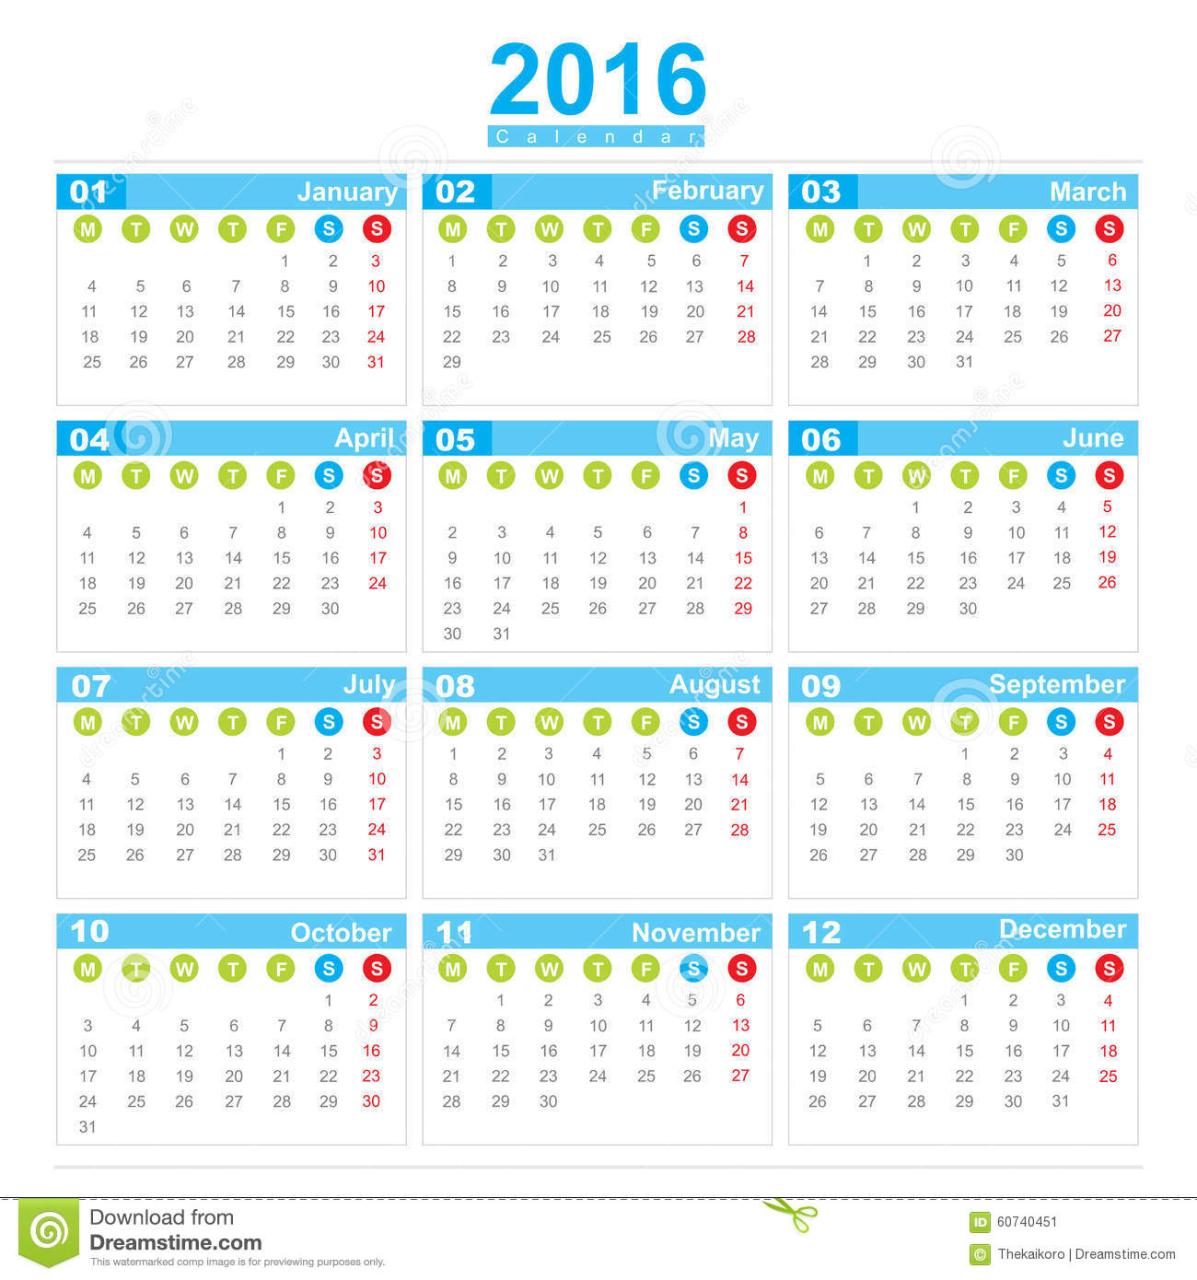 Calendario Con Numero De Semanas 2016 Calendar Template 2019